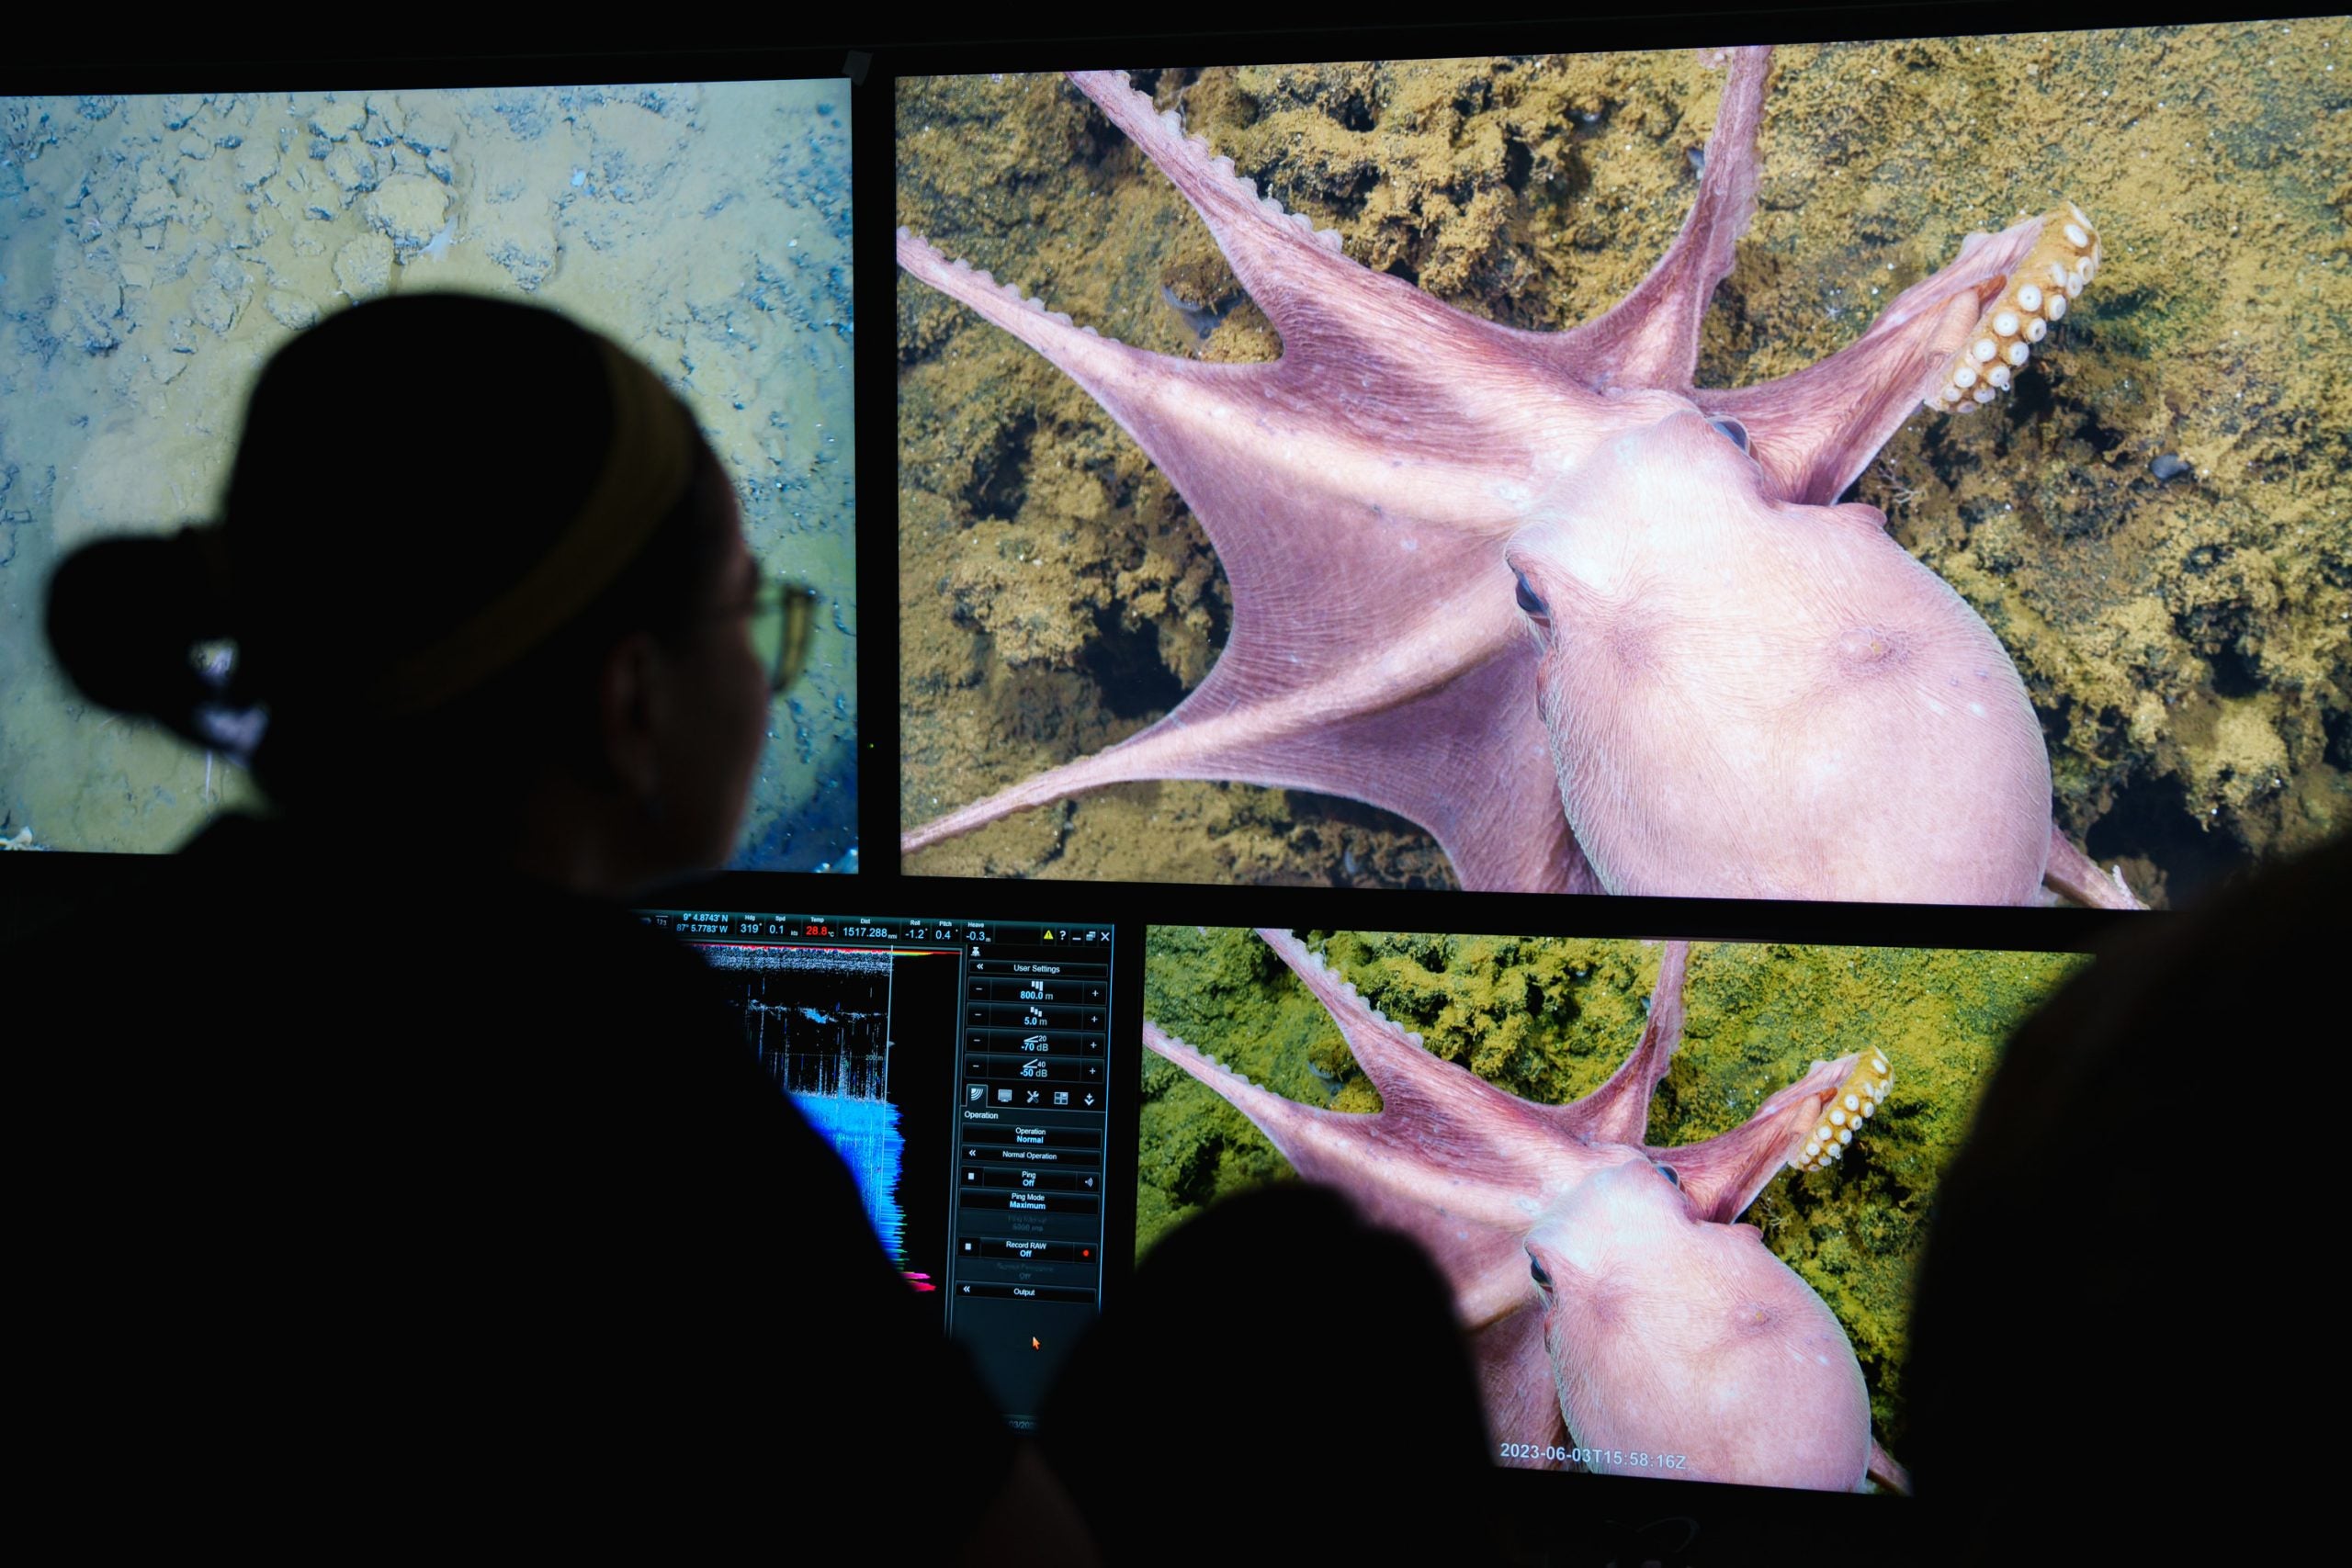 Scientists exploring the octopus nursery in the Dorado Outcrop